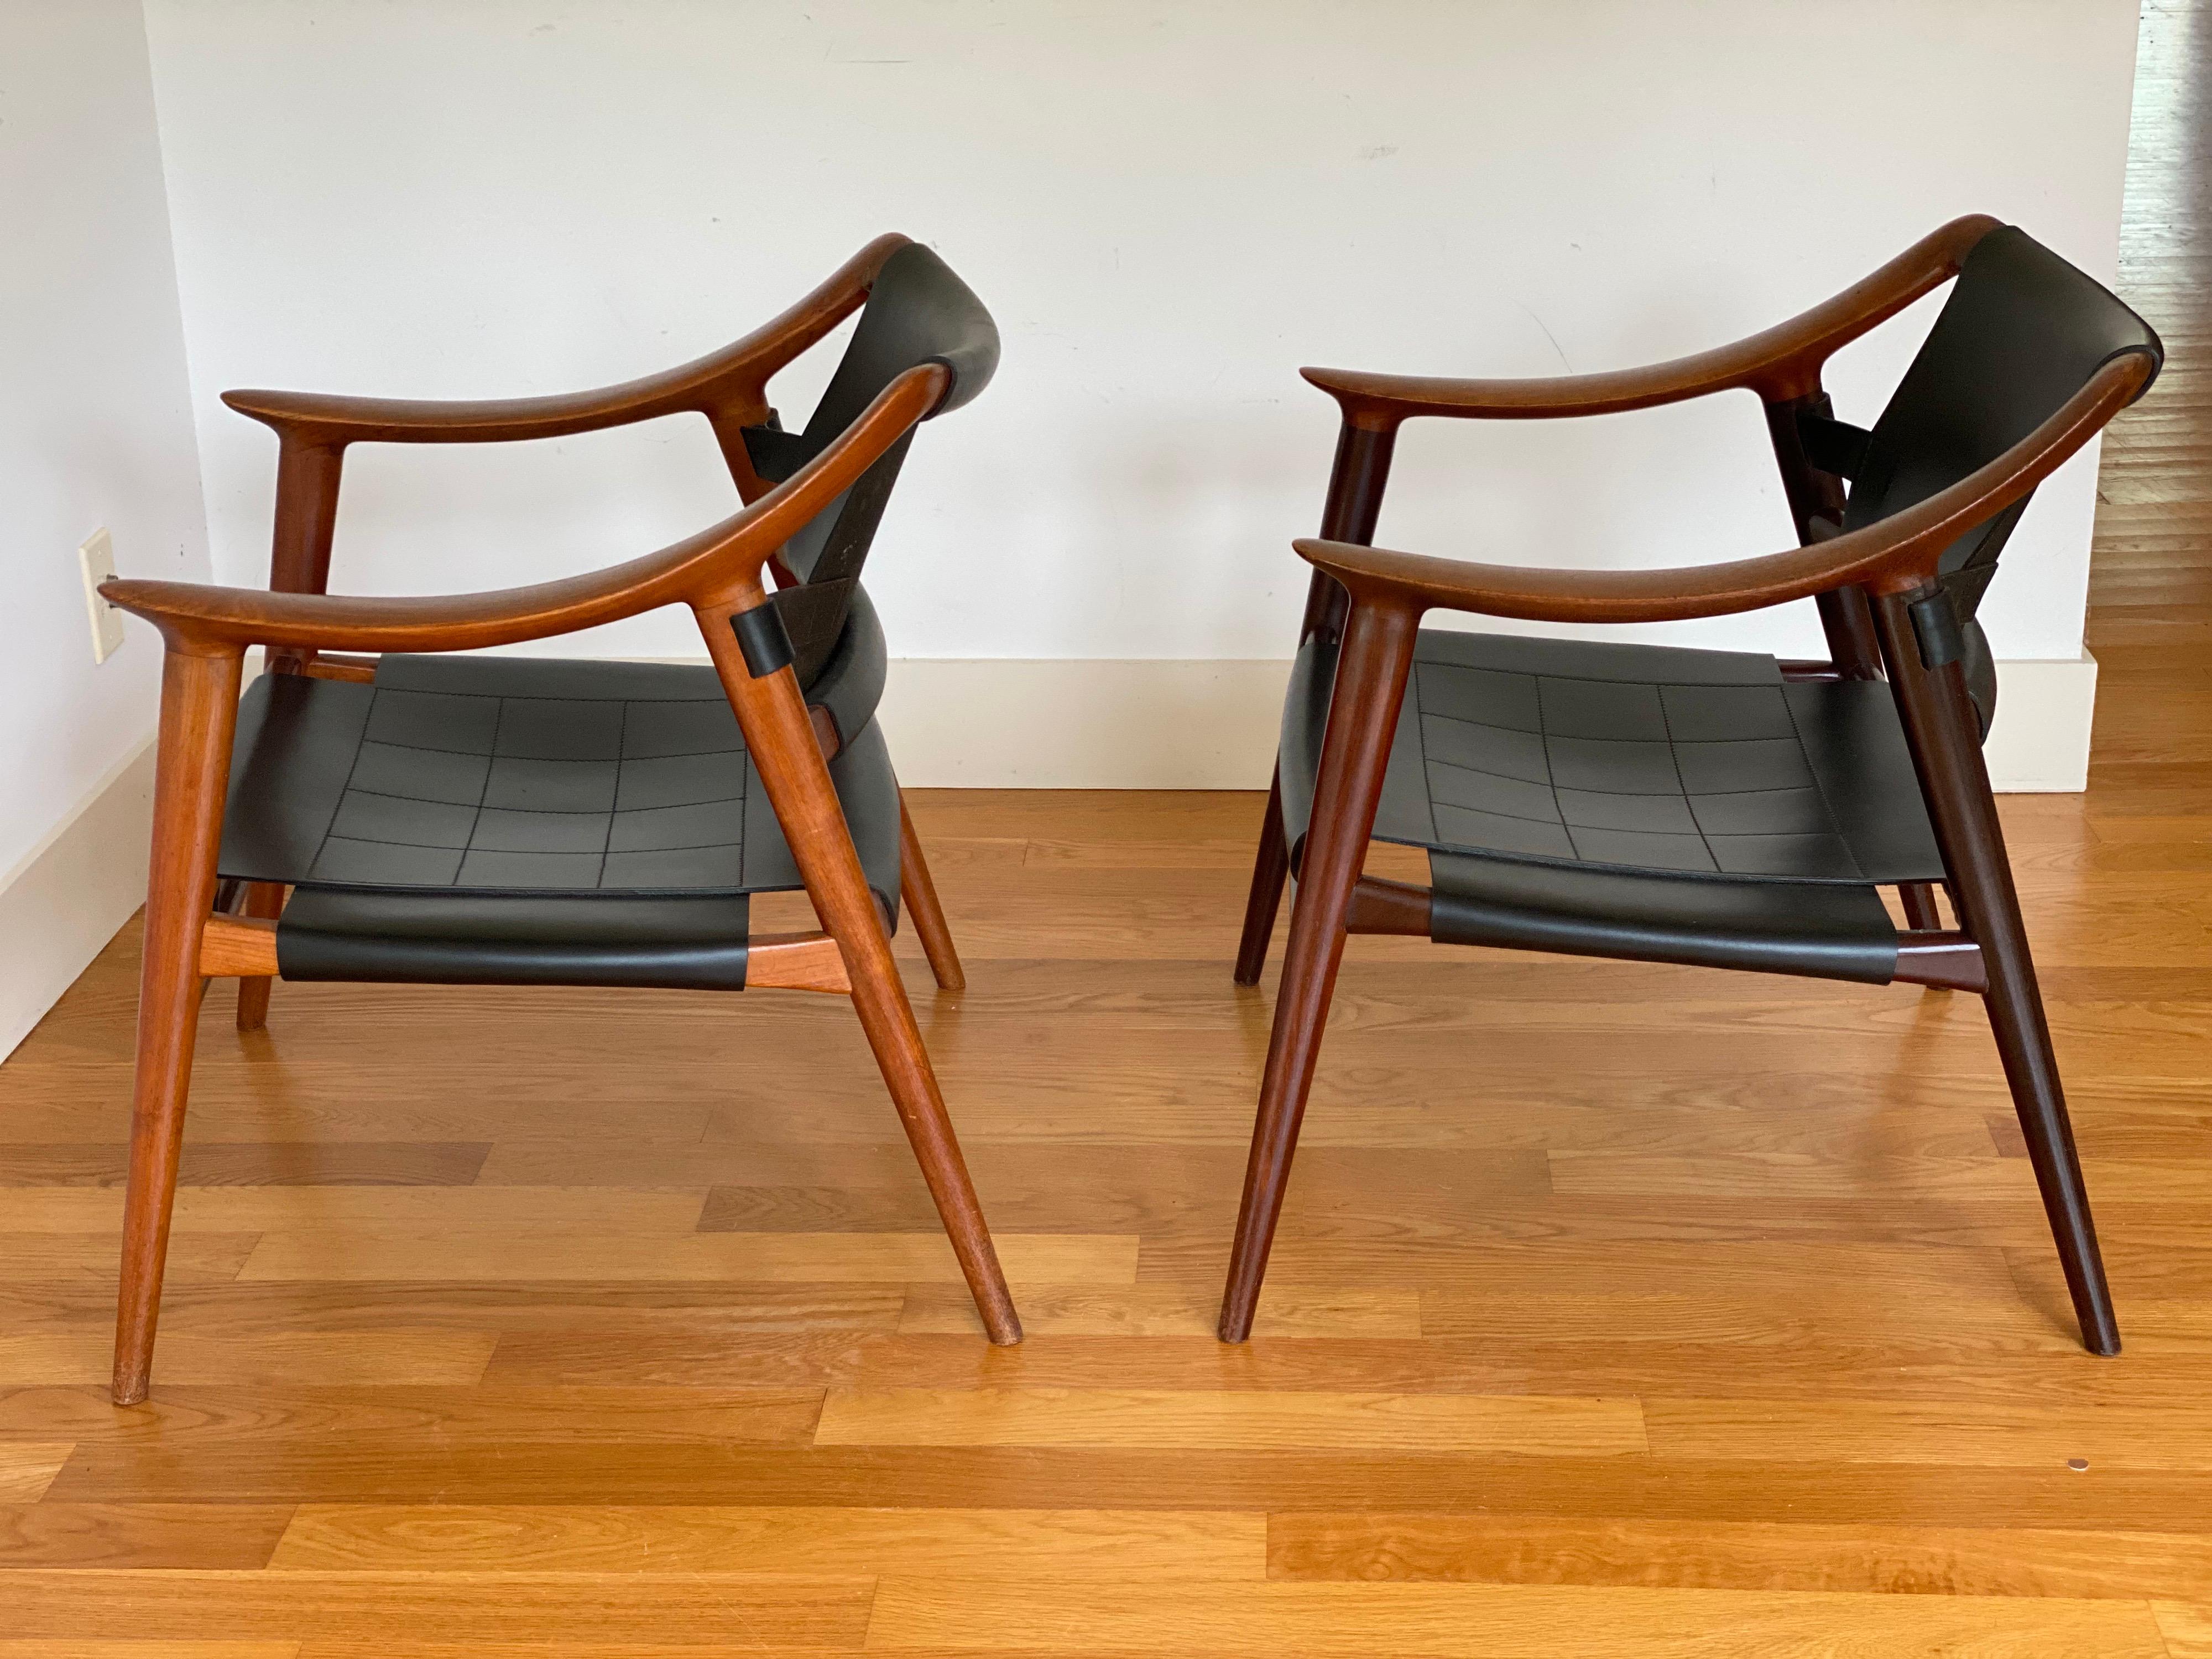 Chaises longues Rolf Rastad & Adolf Relling Modèle Bambi de Gustav Bahus en Norvège.
Deux disponibles. Tous deux sont en teck et en cuir, mais l'un est plus clair en raison de la décoloration due au soleil. 
Les accoudoirs plats et incurvés rendent